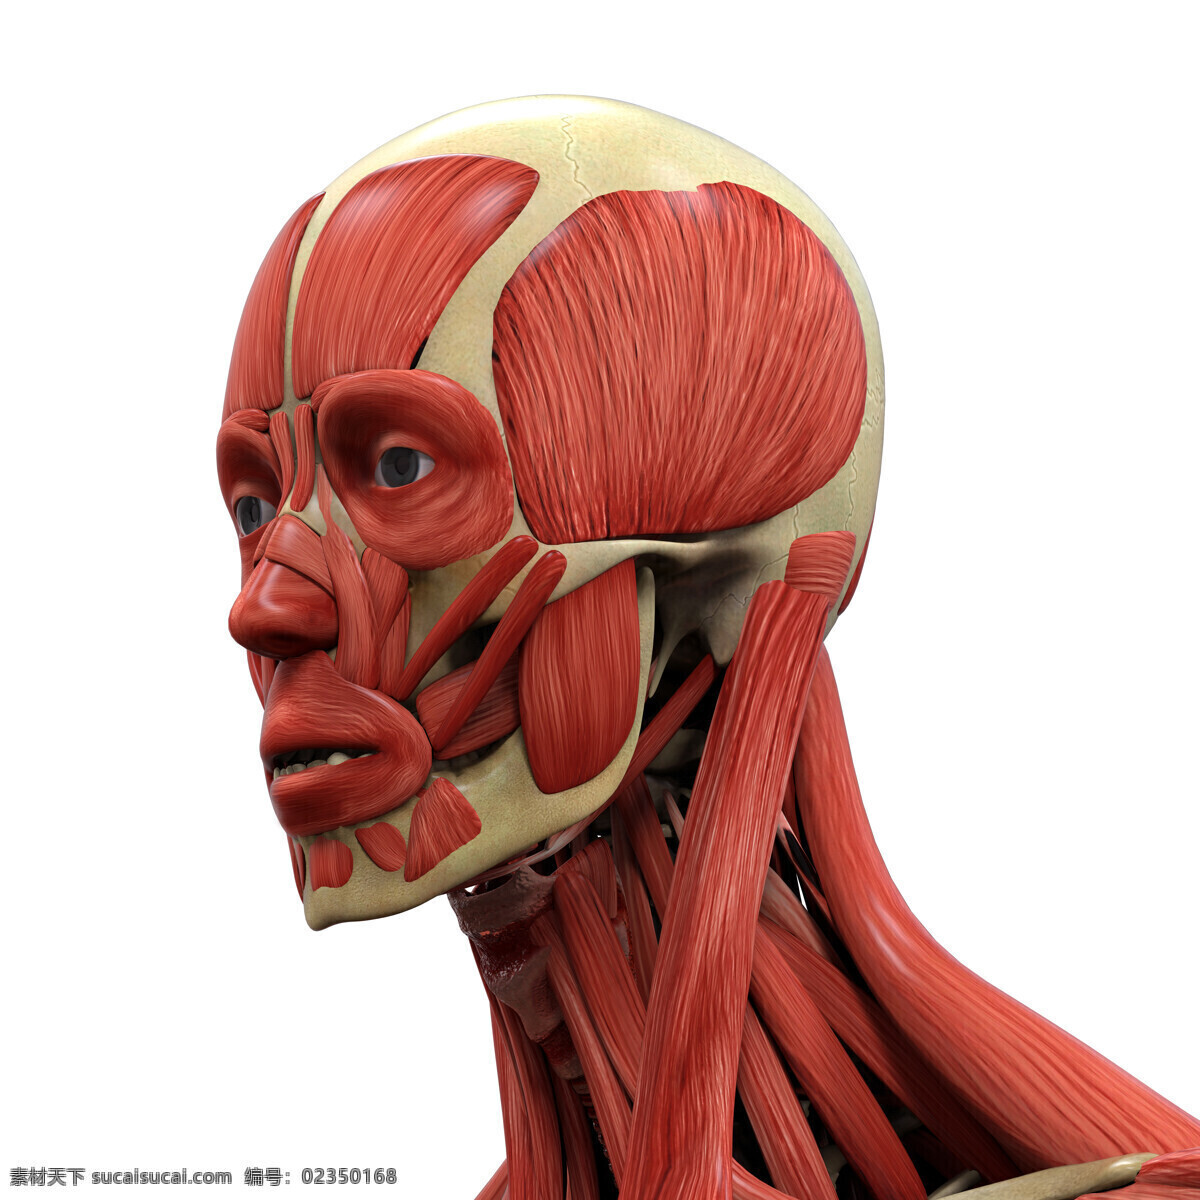 男性 头部 肌肉 组织 头部肌肉 人体 人体肌肉器官 肌肉结构 人体解剖学 医疗护理 现代科技